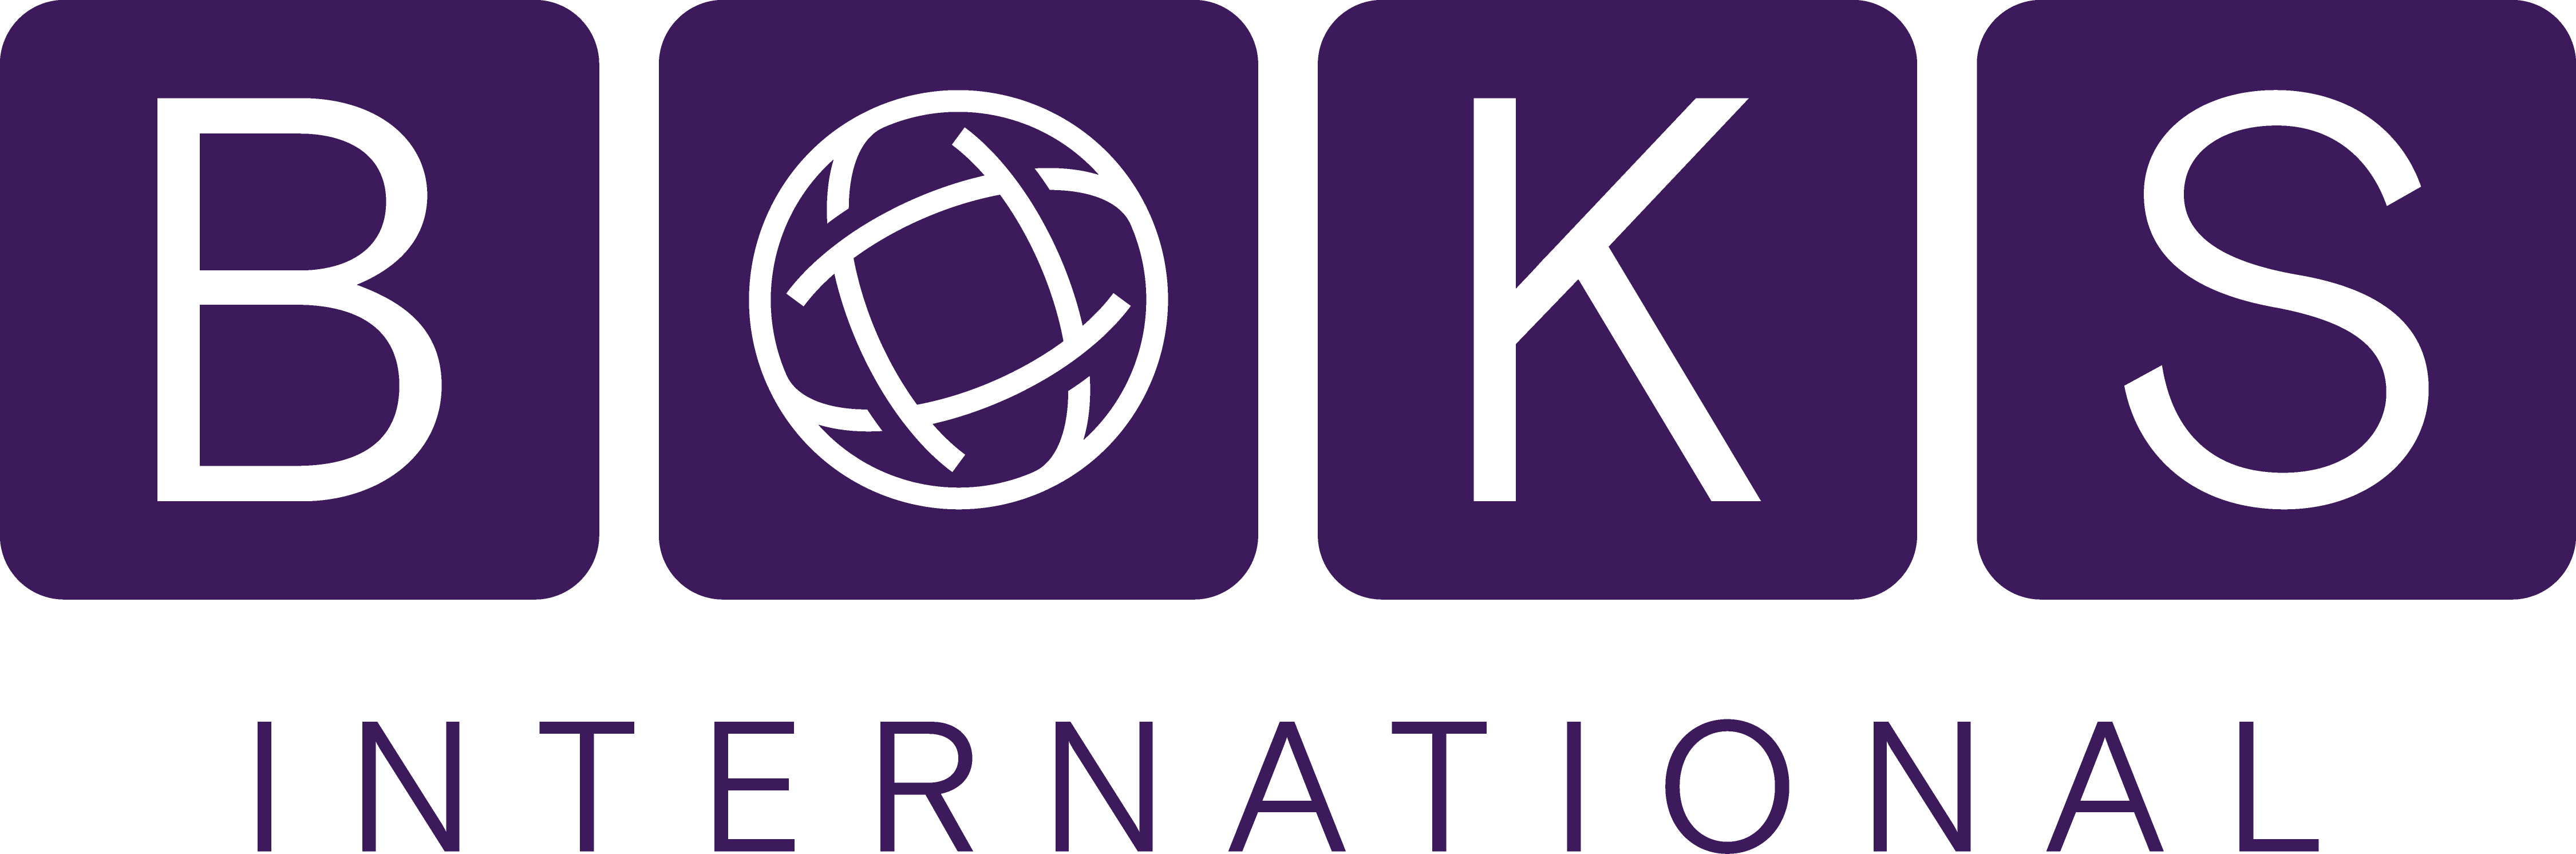 Logo de BOKS International, mas información: https://www.boks-international.com/